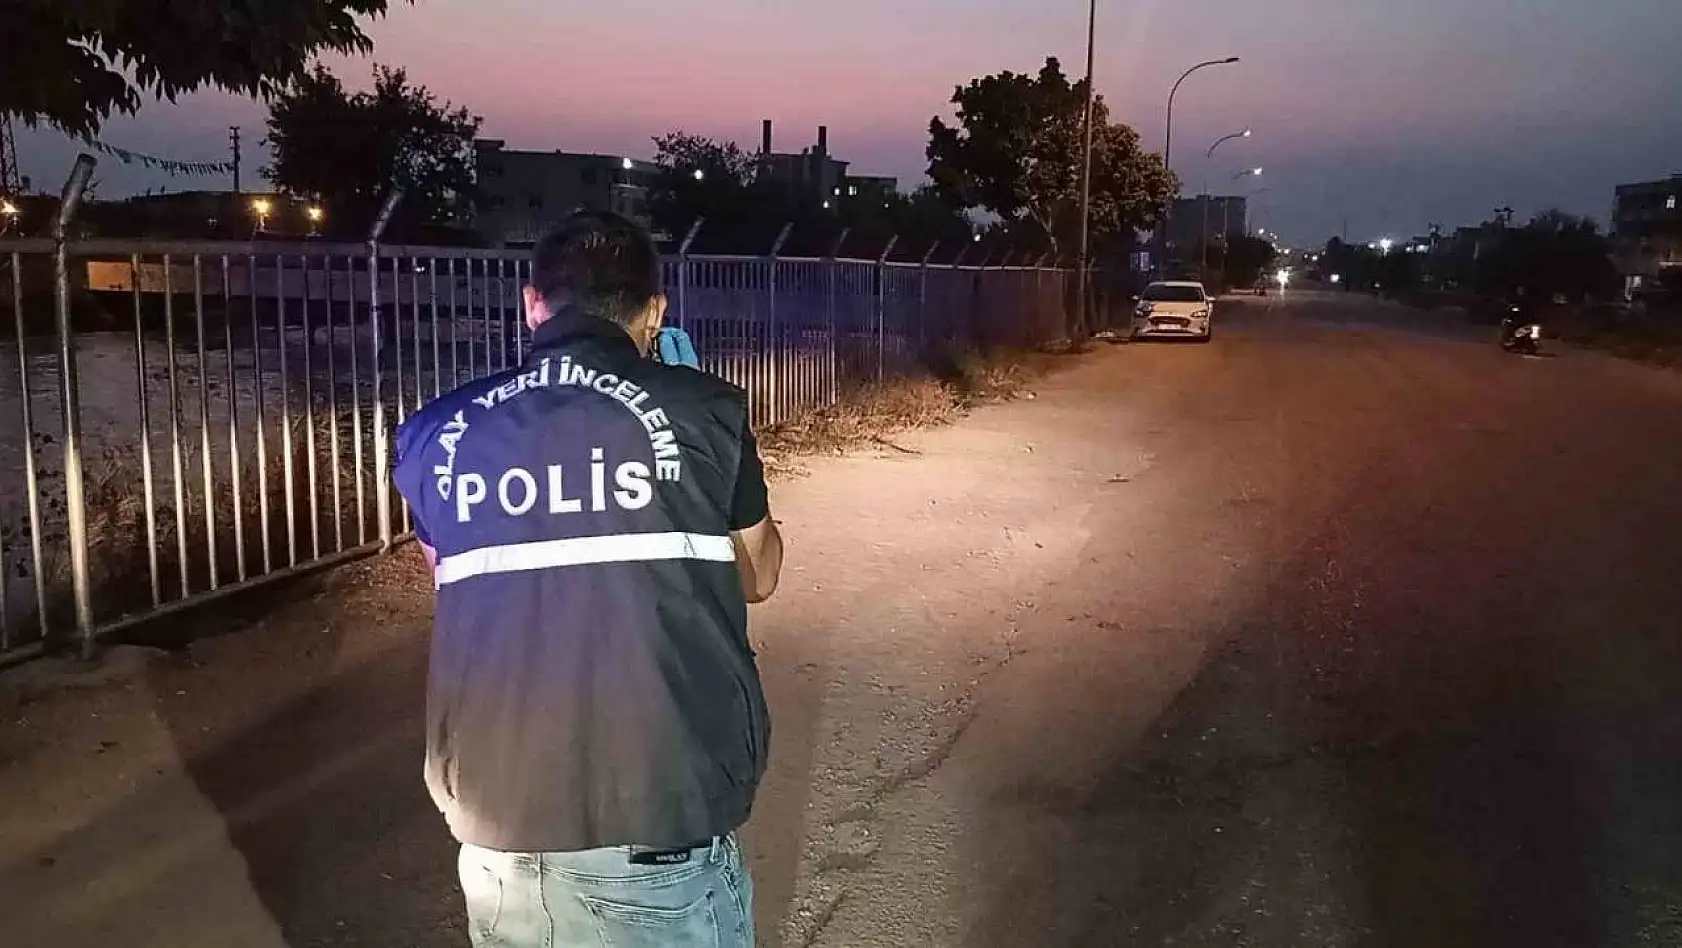 Adana'da silahlı saldırı: 1 yaralı